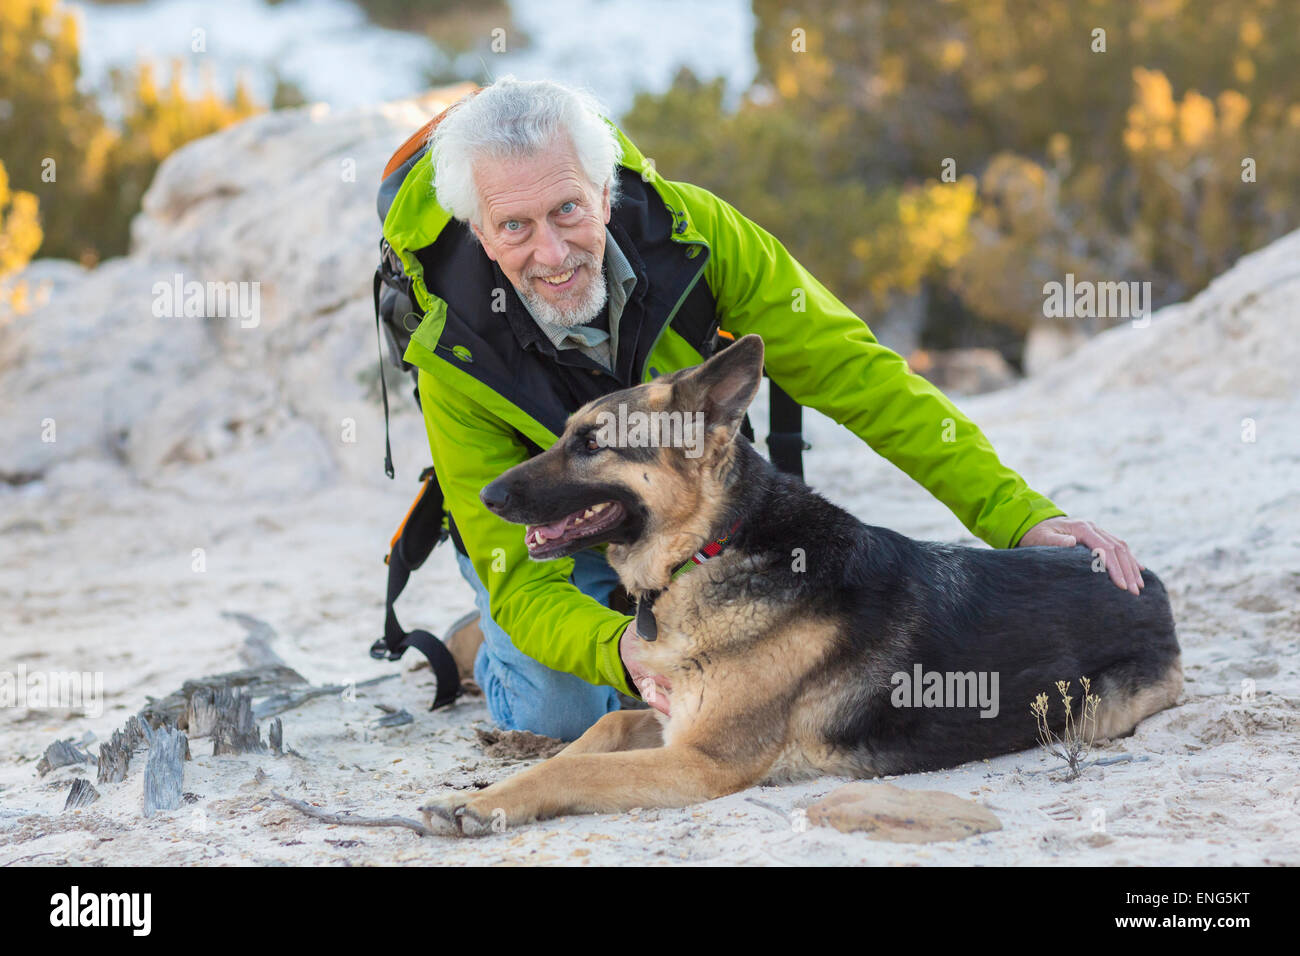 Homme plus âgé petting dog on rocky hillside Banque D'Images